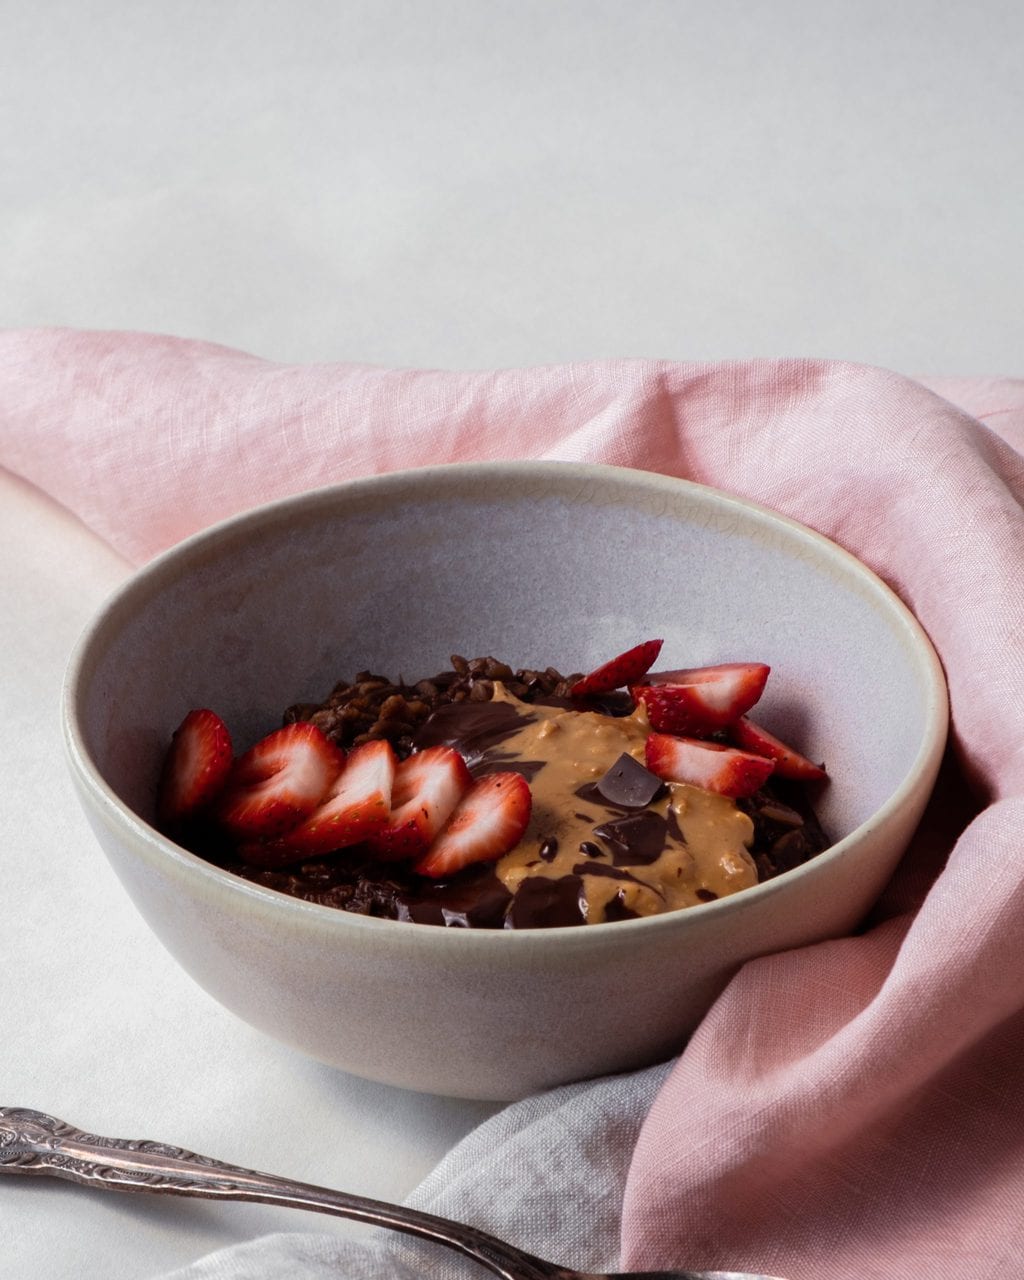 Chocolate porridge recipe